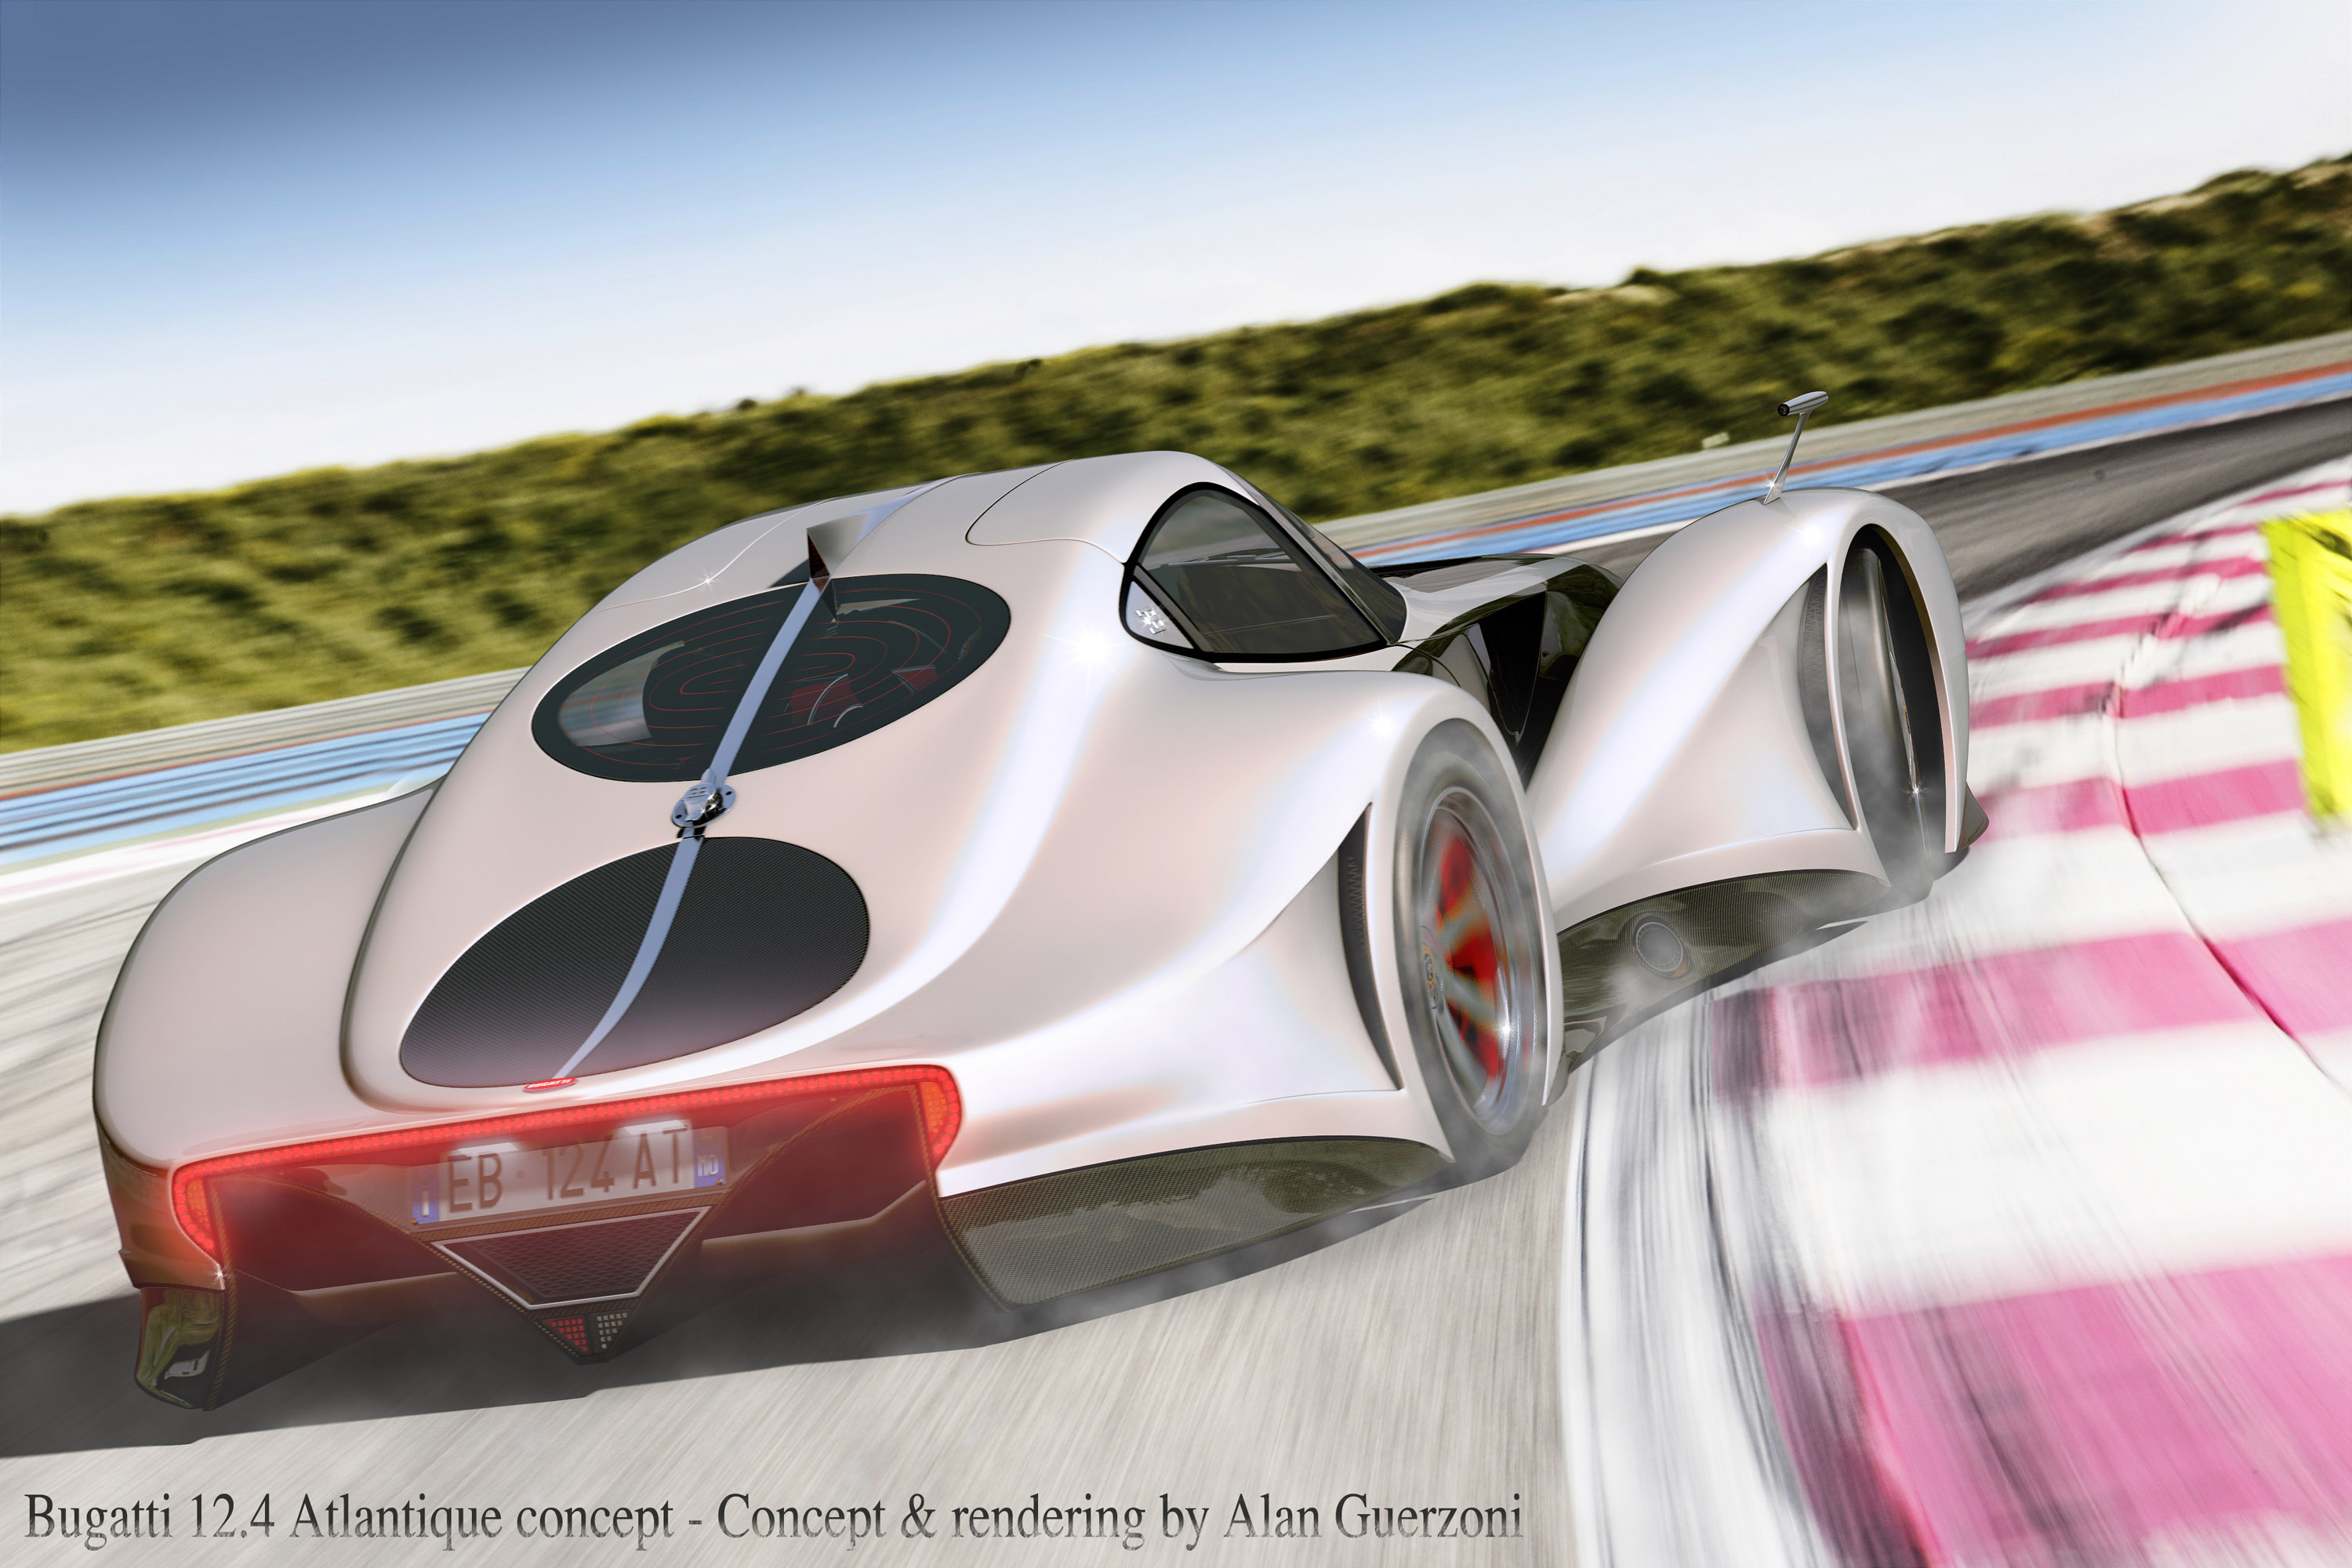 Bugatti 12.4 Atlantique Grand Sport Concept Backgrounds, Compatible - PC, Mobile, Gadgets| 3000x2000 px